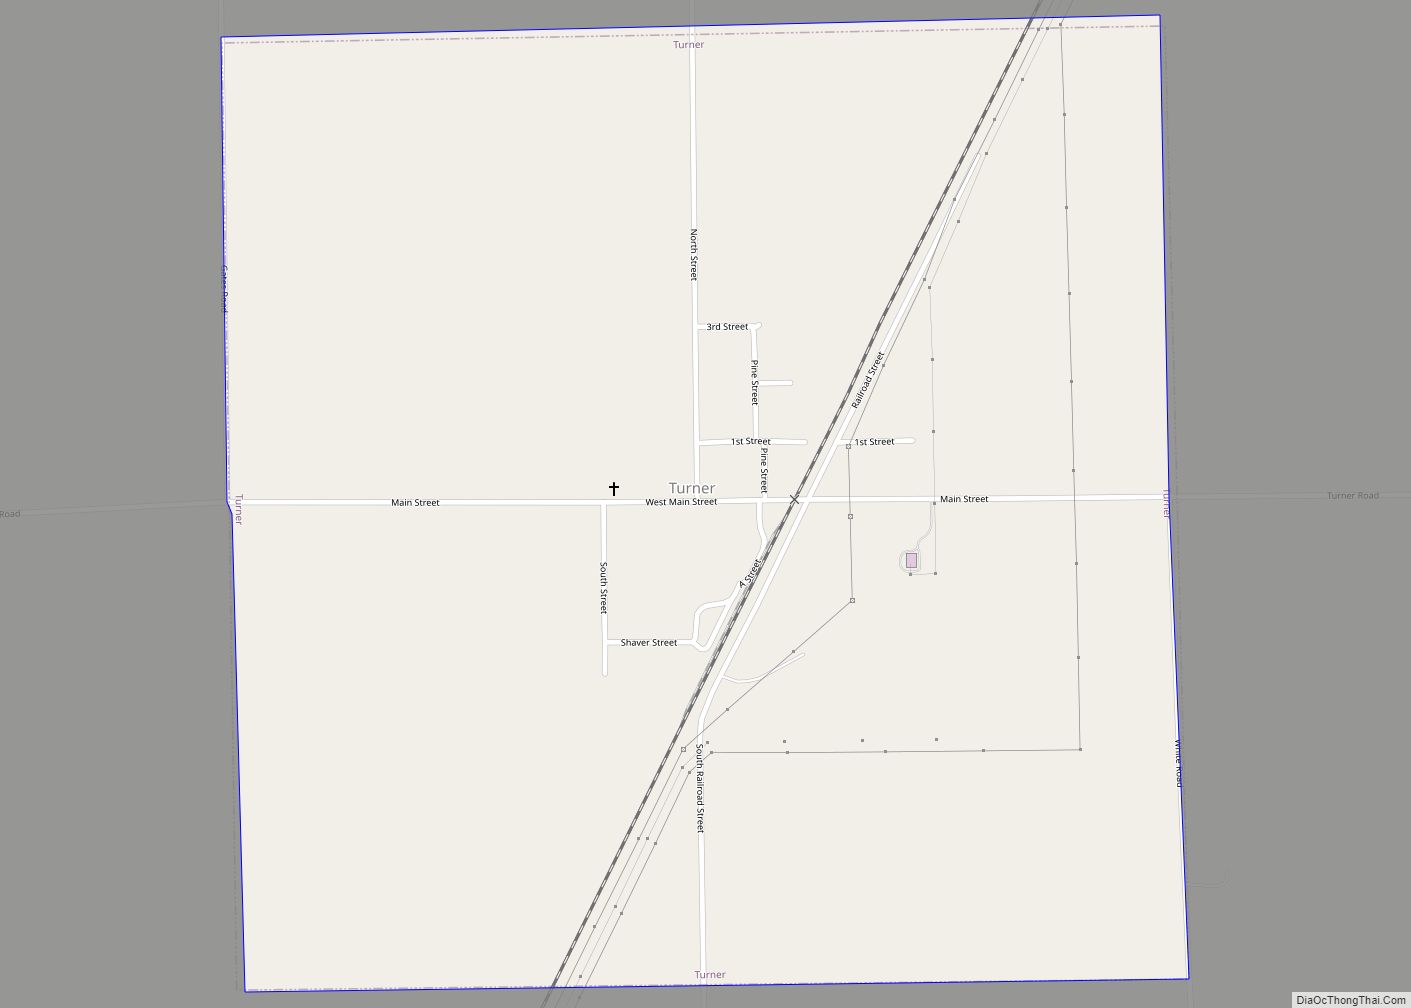 Map of Turner village